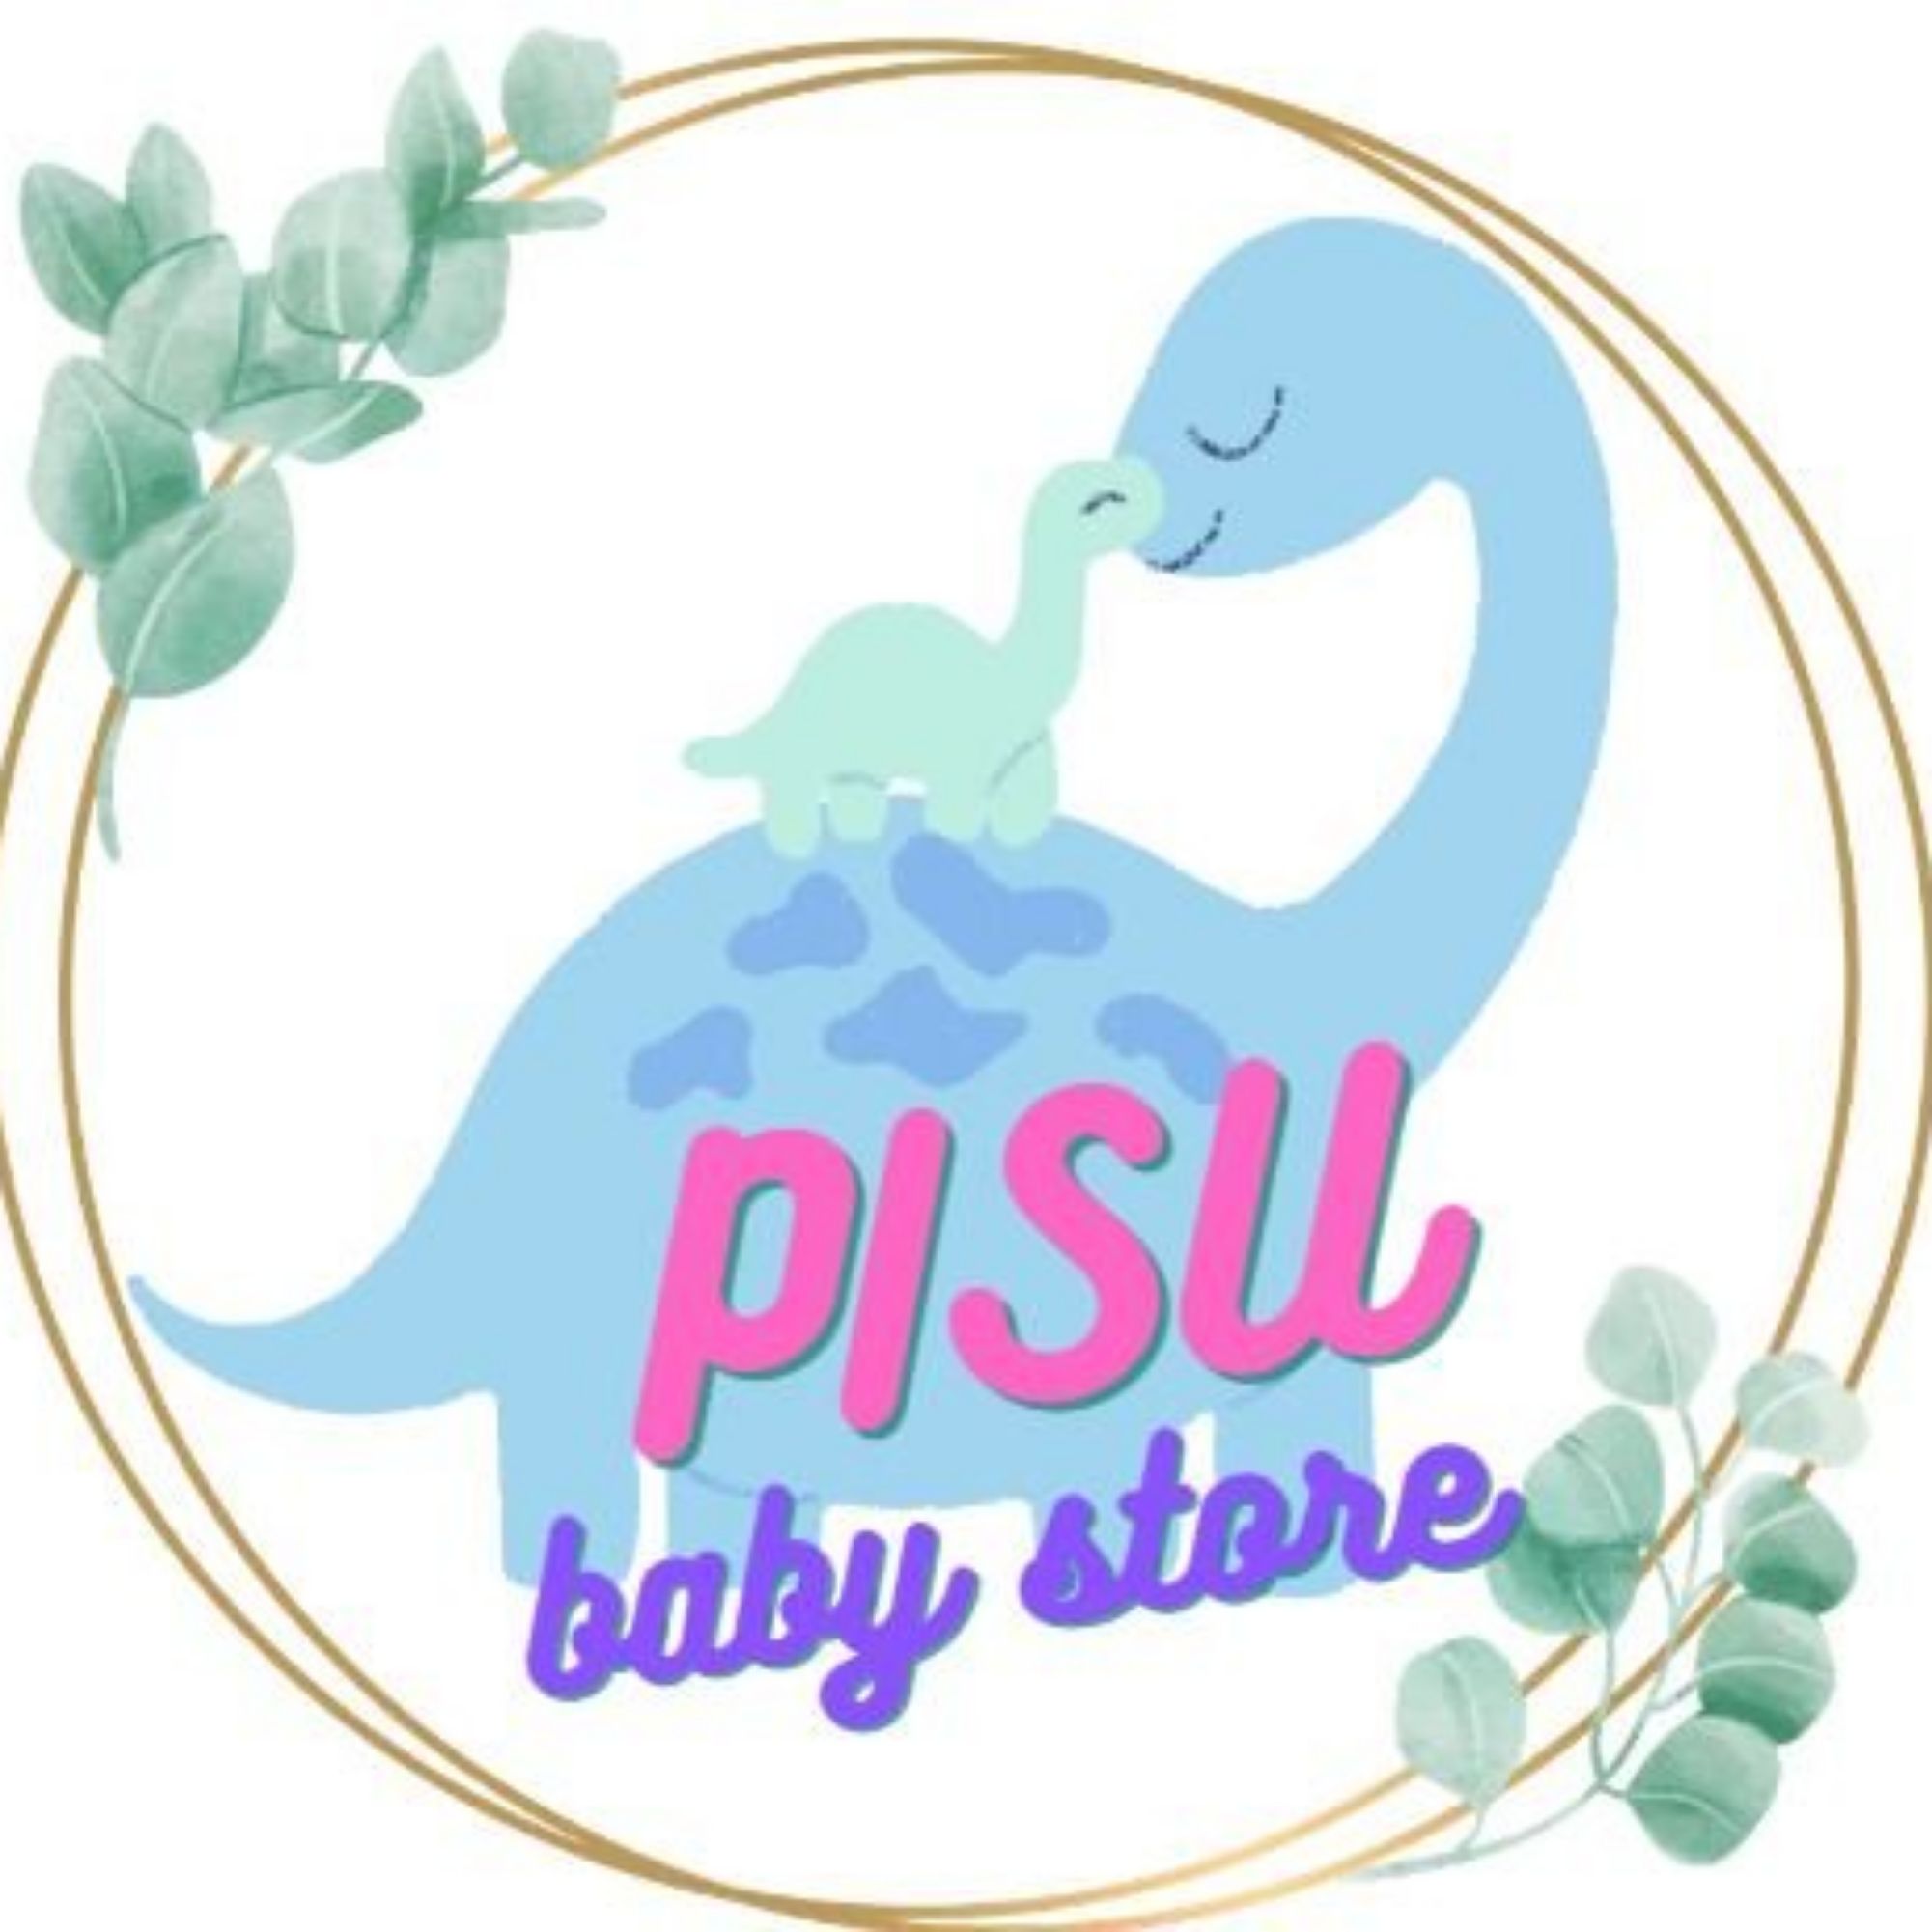 PISU baby store